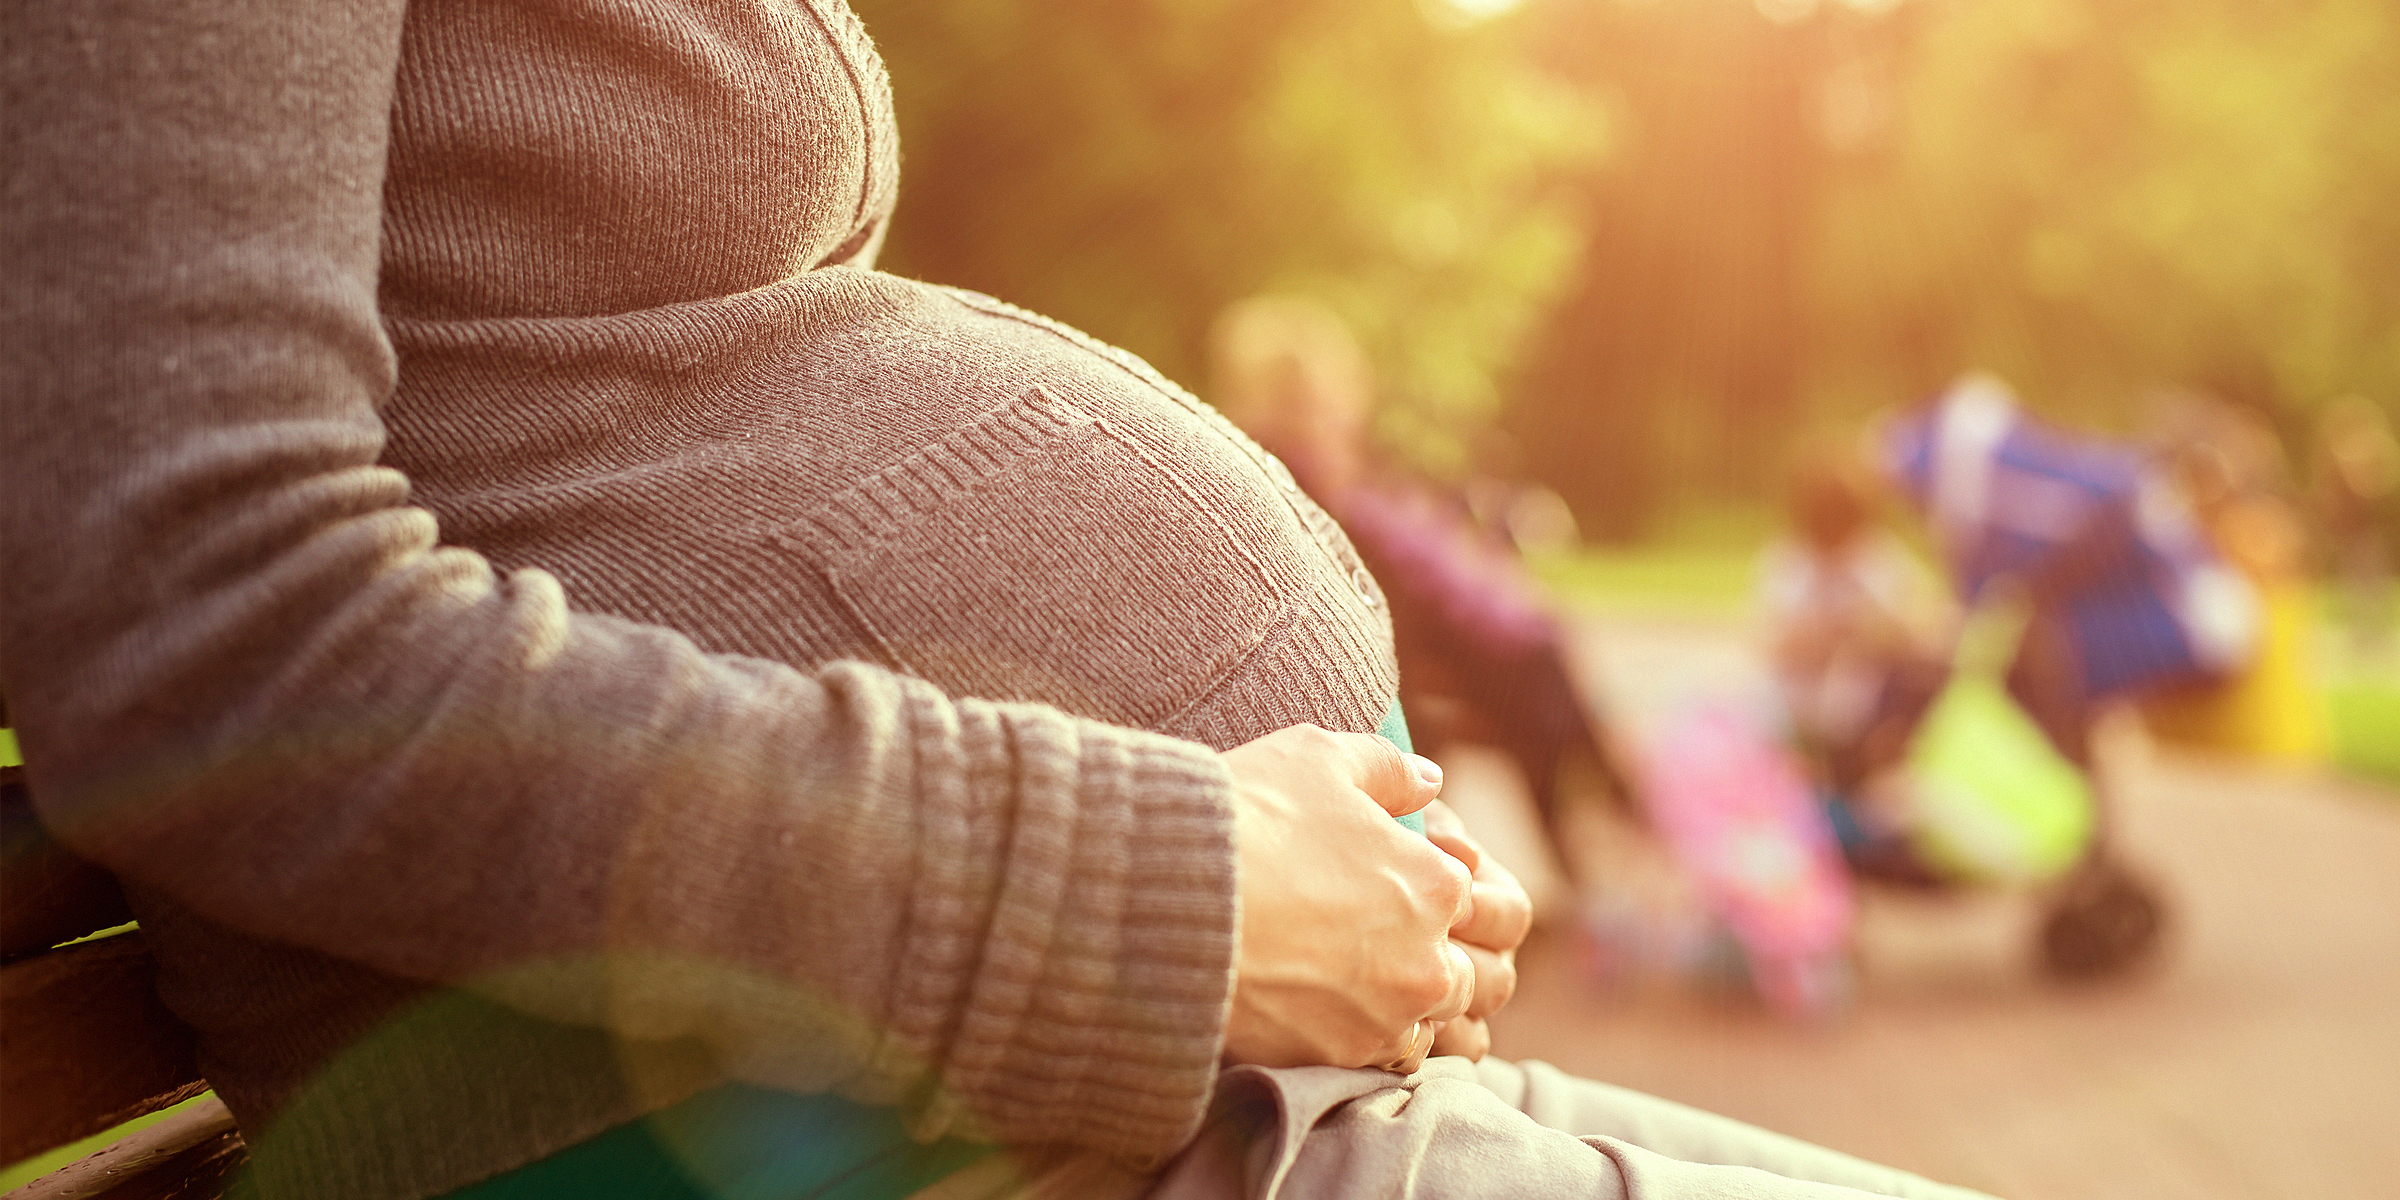 Eine schwangere Frau, die ihren Babybauch im Sitzen streichelt | Quelle: Shutterstock